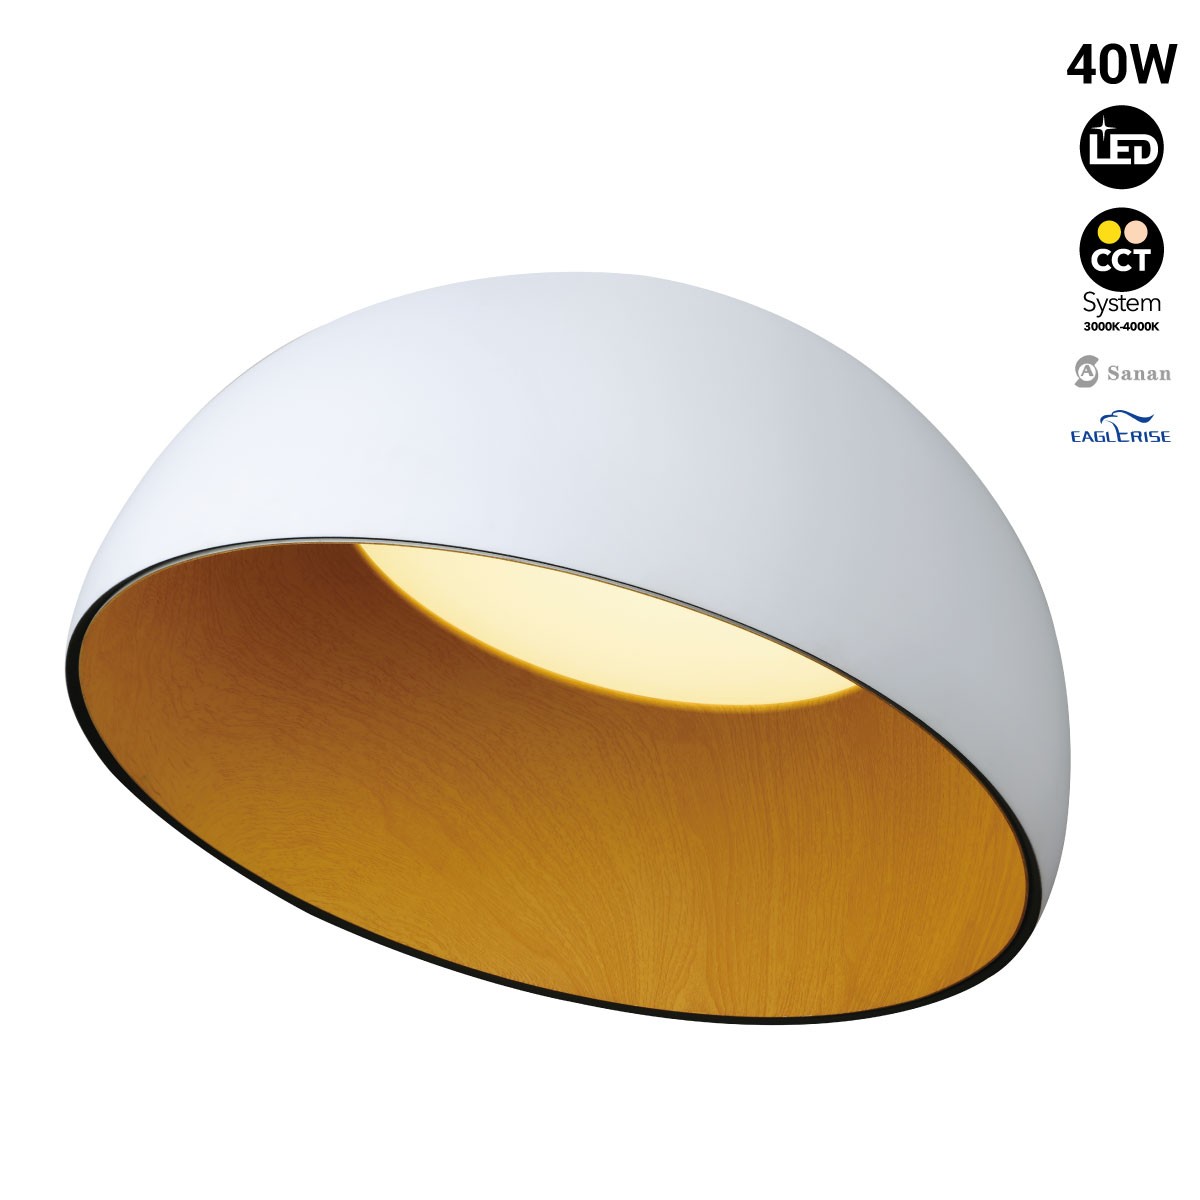 Lampada LED da soffitto "Mulen" - Effetto legno - CCT 3000K - 4000K - 40W